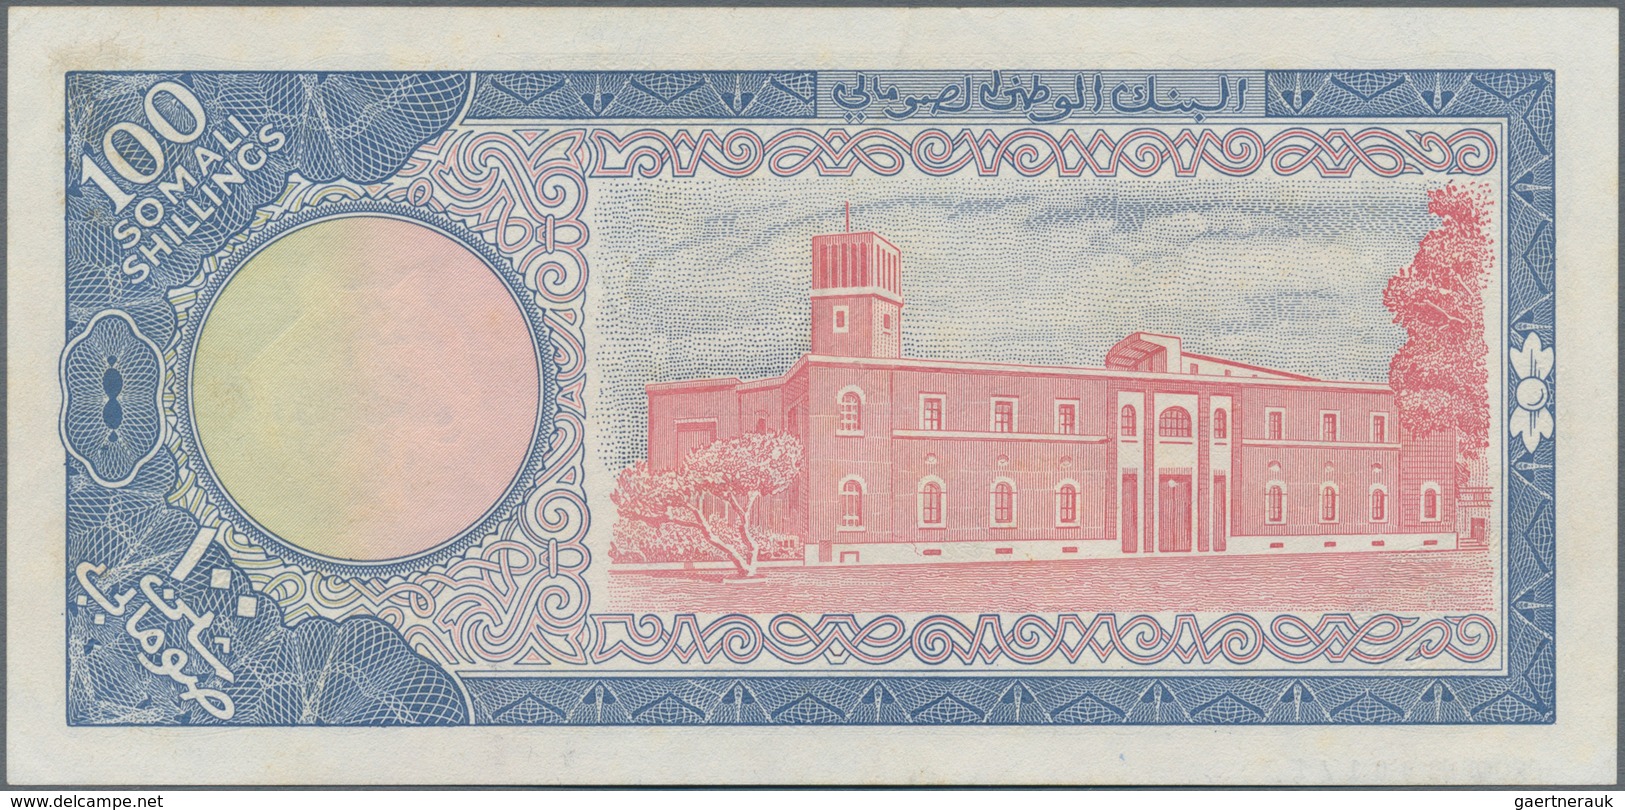 Somalia: Banca Nazionale Somala 100 Scellini 1966 SPECIMEN, P.8s, Very Soft Diagonal Bend At Center - Somalië